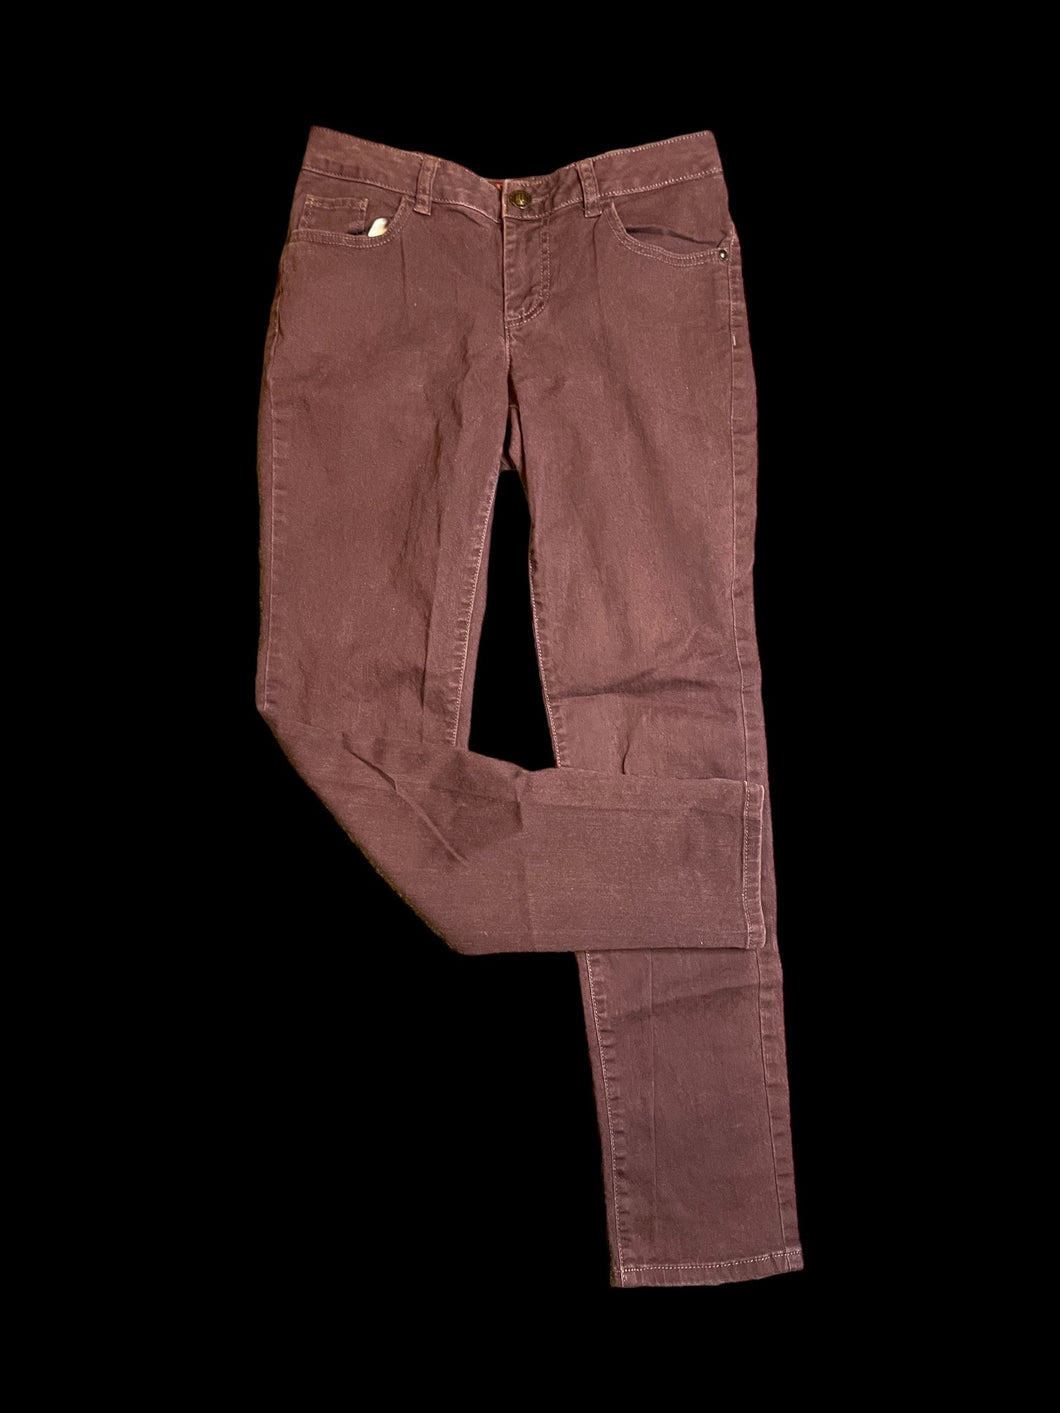 M Plum cotton blend mid rise taper leg pants w/ pockets, belt loops, & button/zipper closures